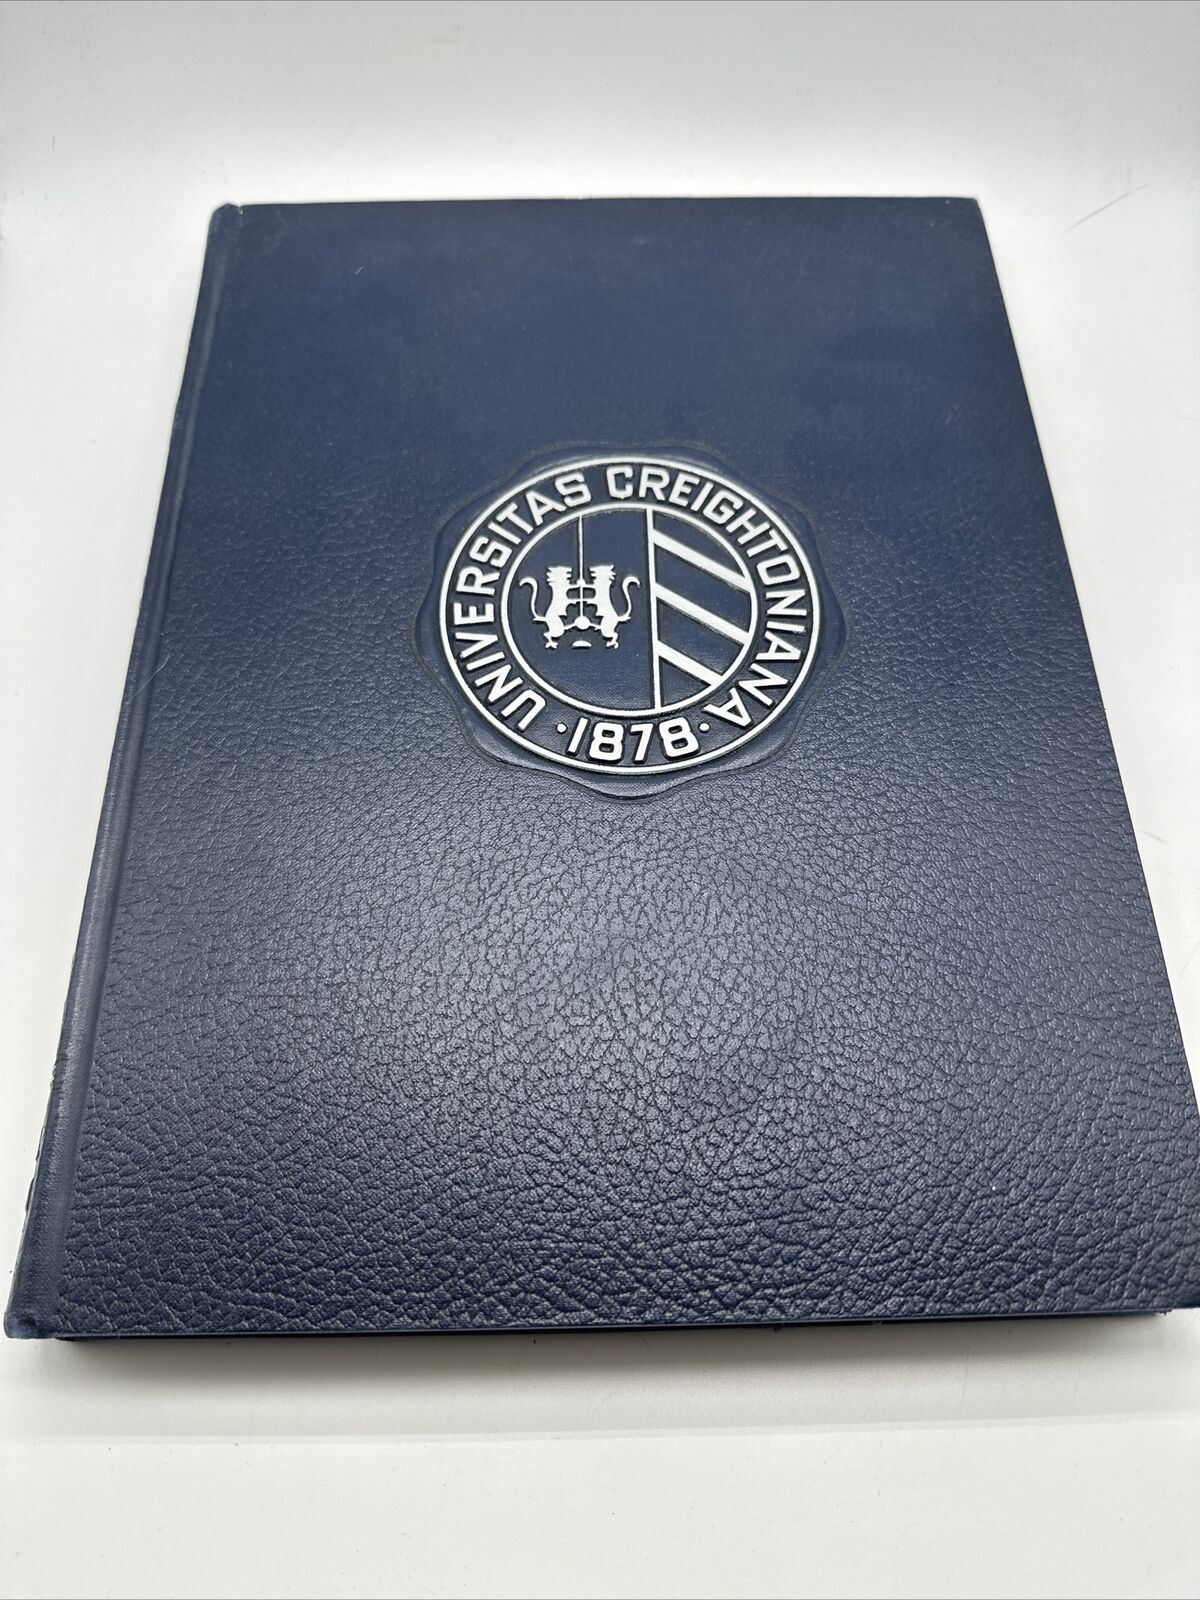 1962 Creighton University Yearbook Blue Jay Volume XXXII Omaha Nebraska